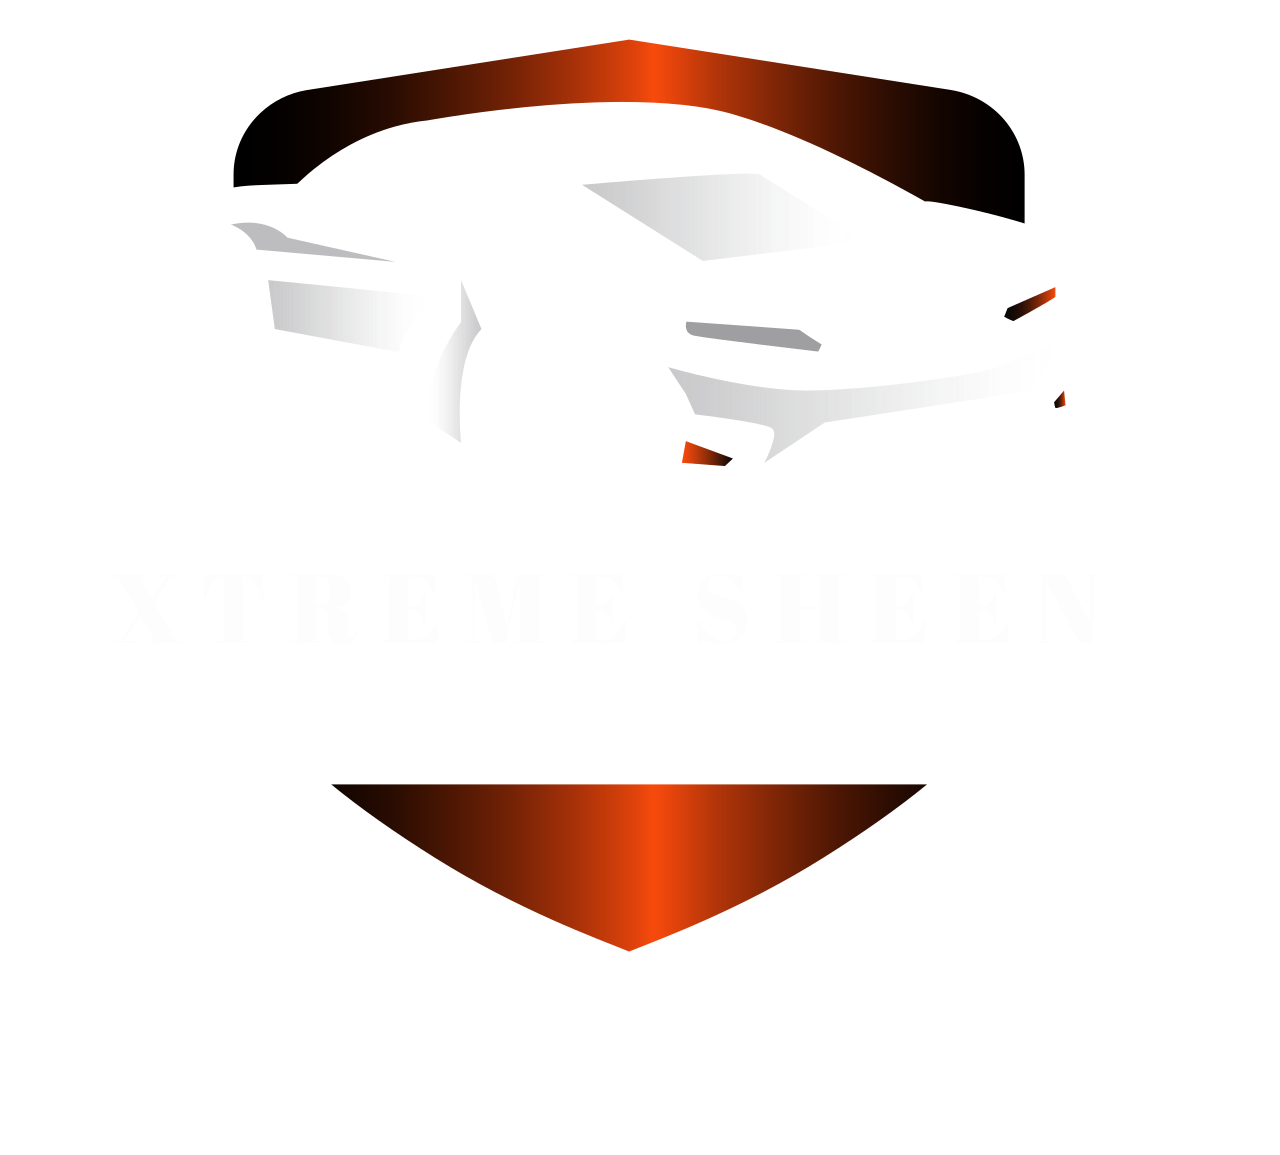   Xtreme Sheen's logo